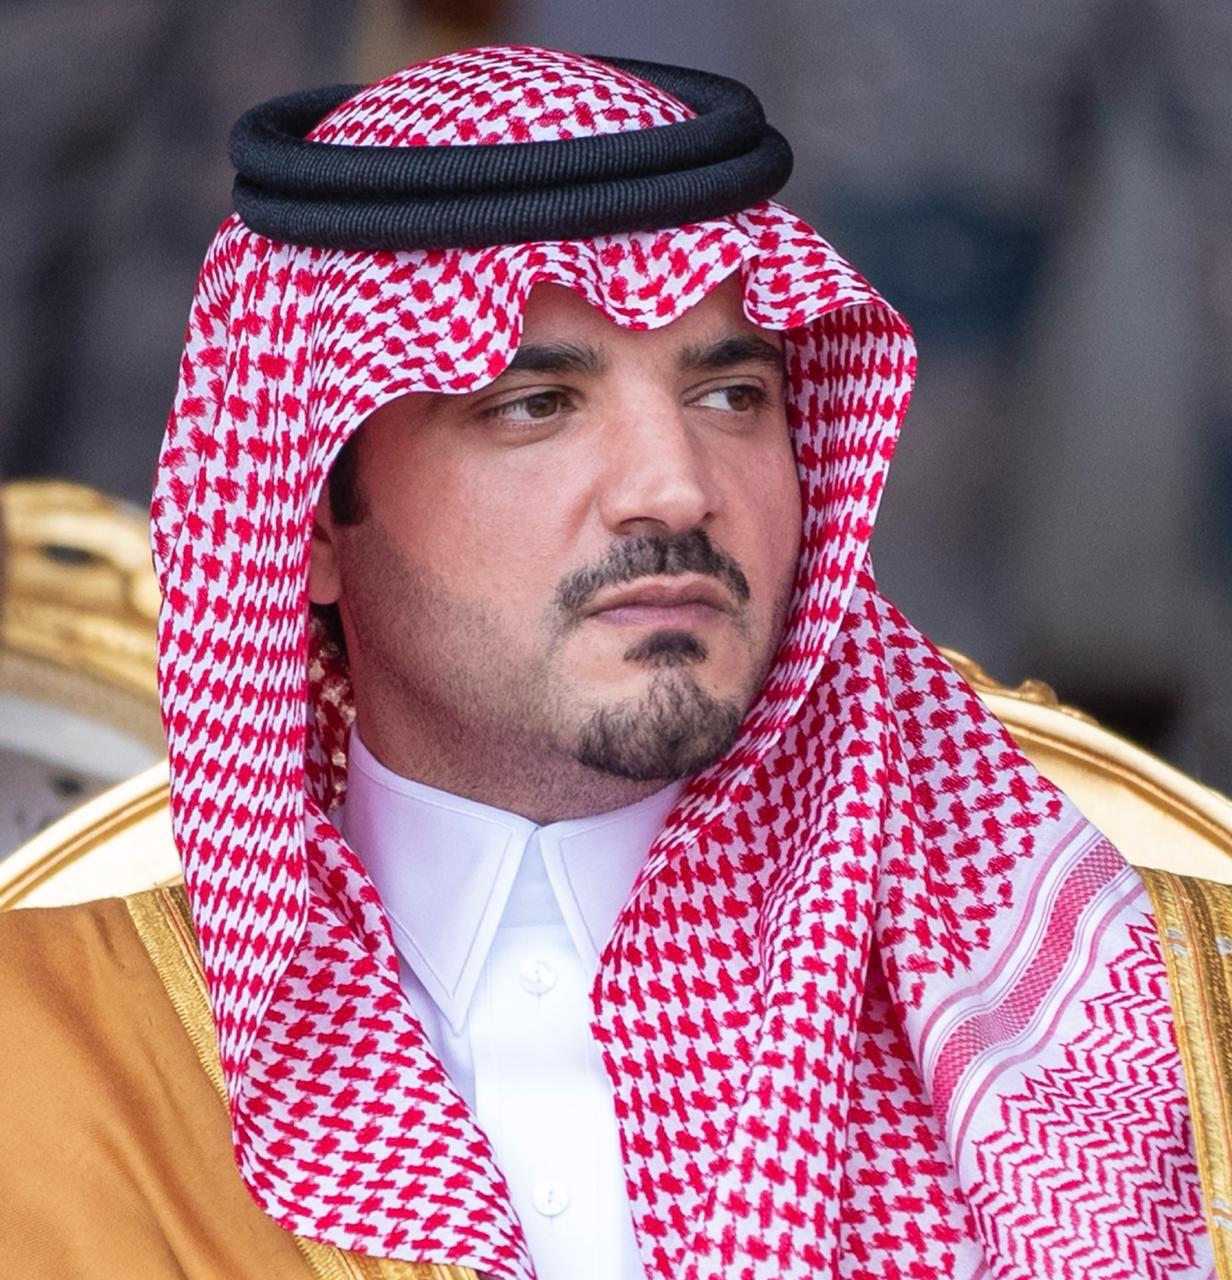 وزير الداخلية: إشادة الملك سلمان بجنودنا البواسل أكبر تقدير وحافز